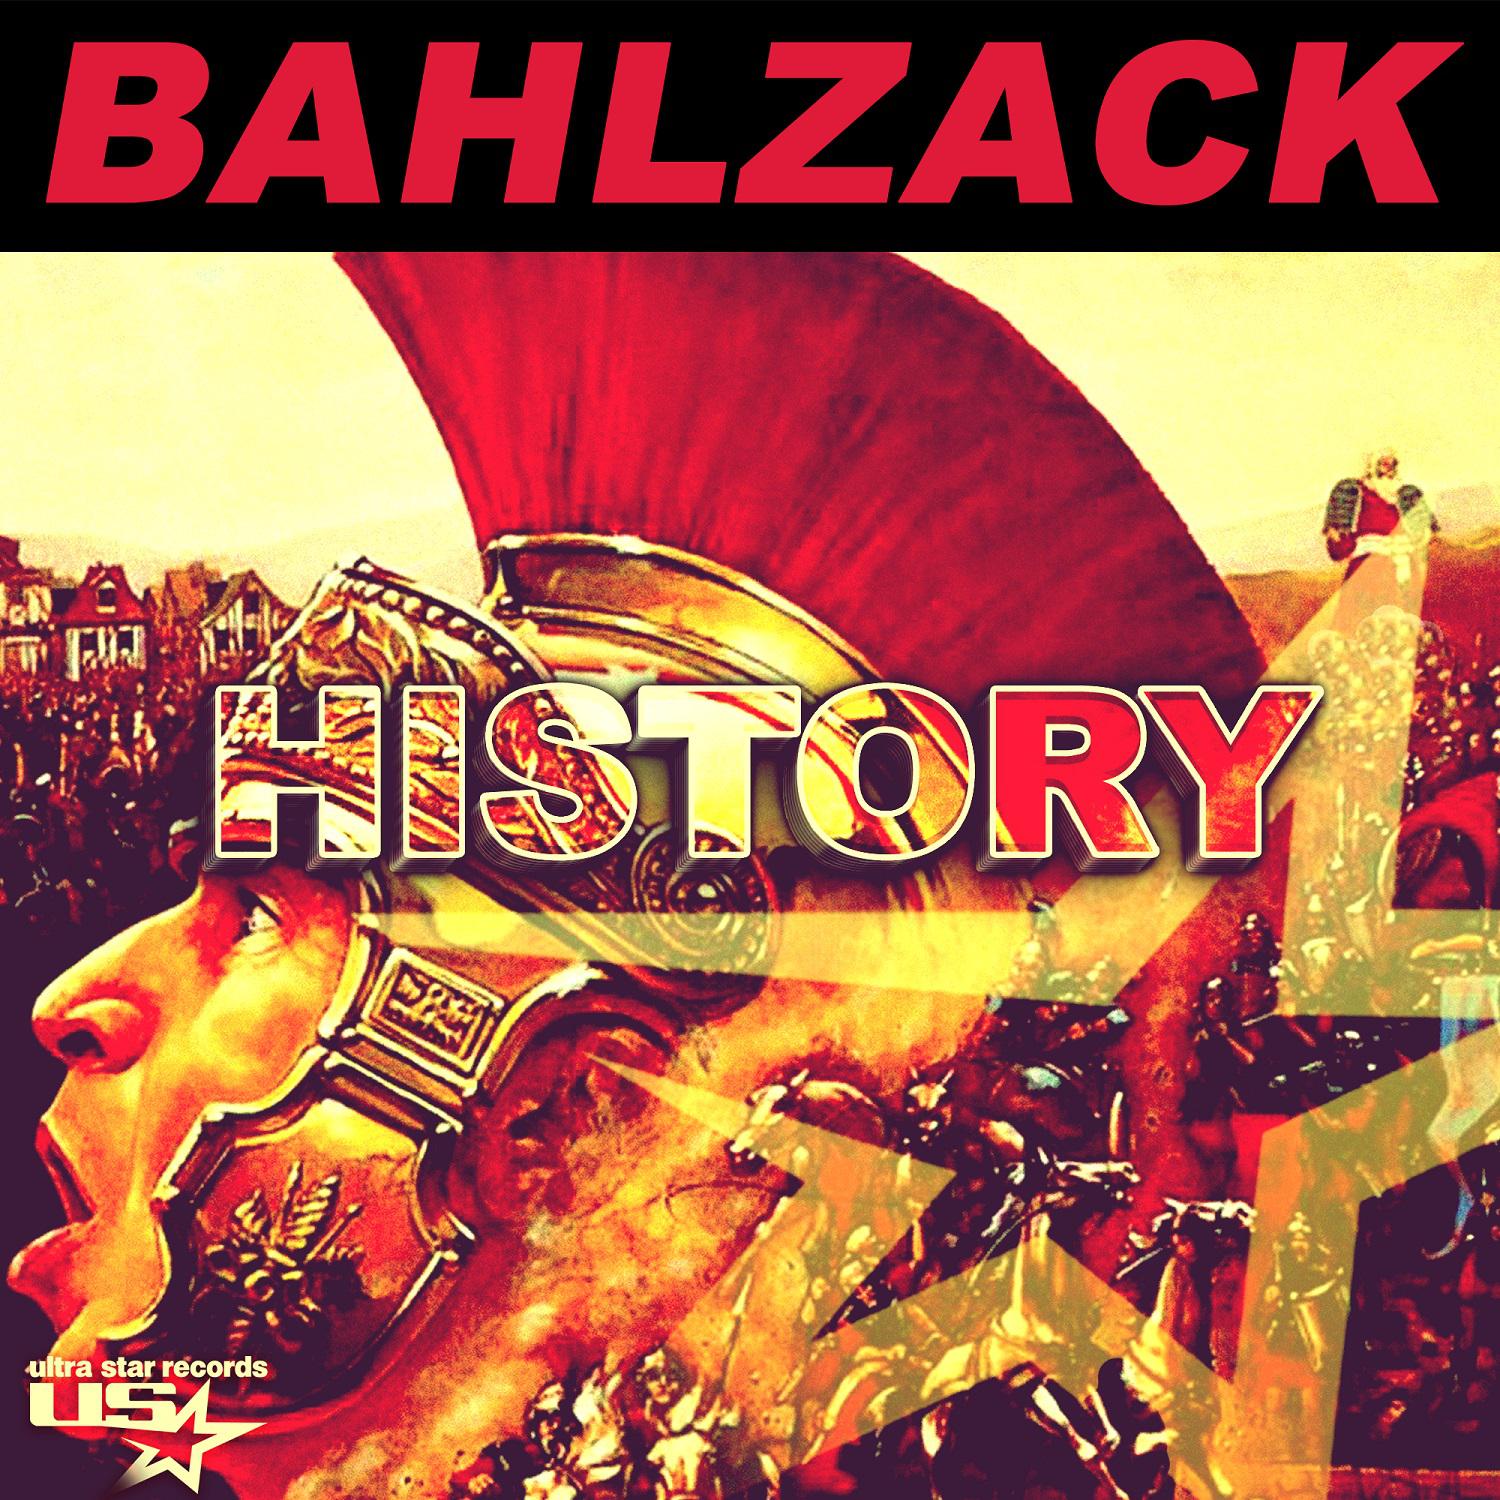 Bahlzack - The Future